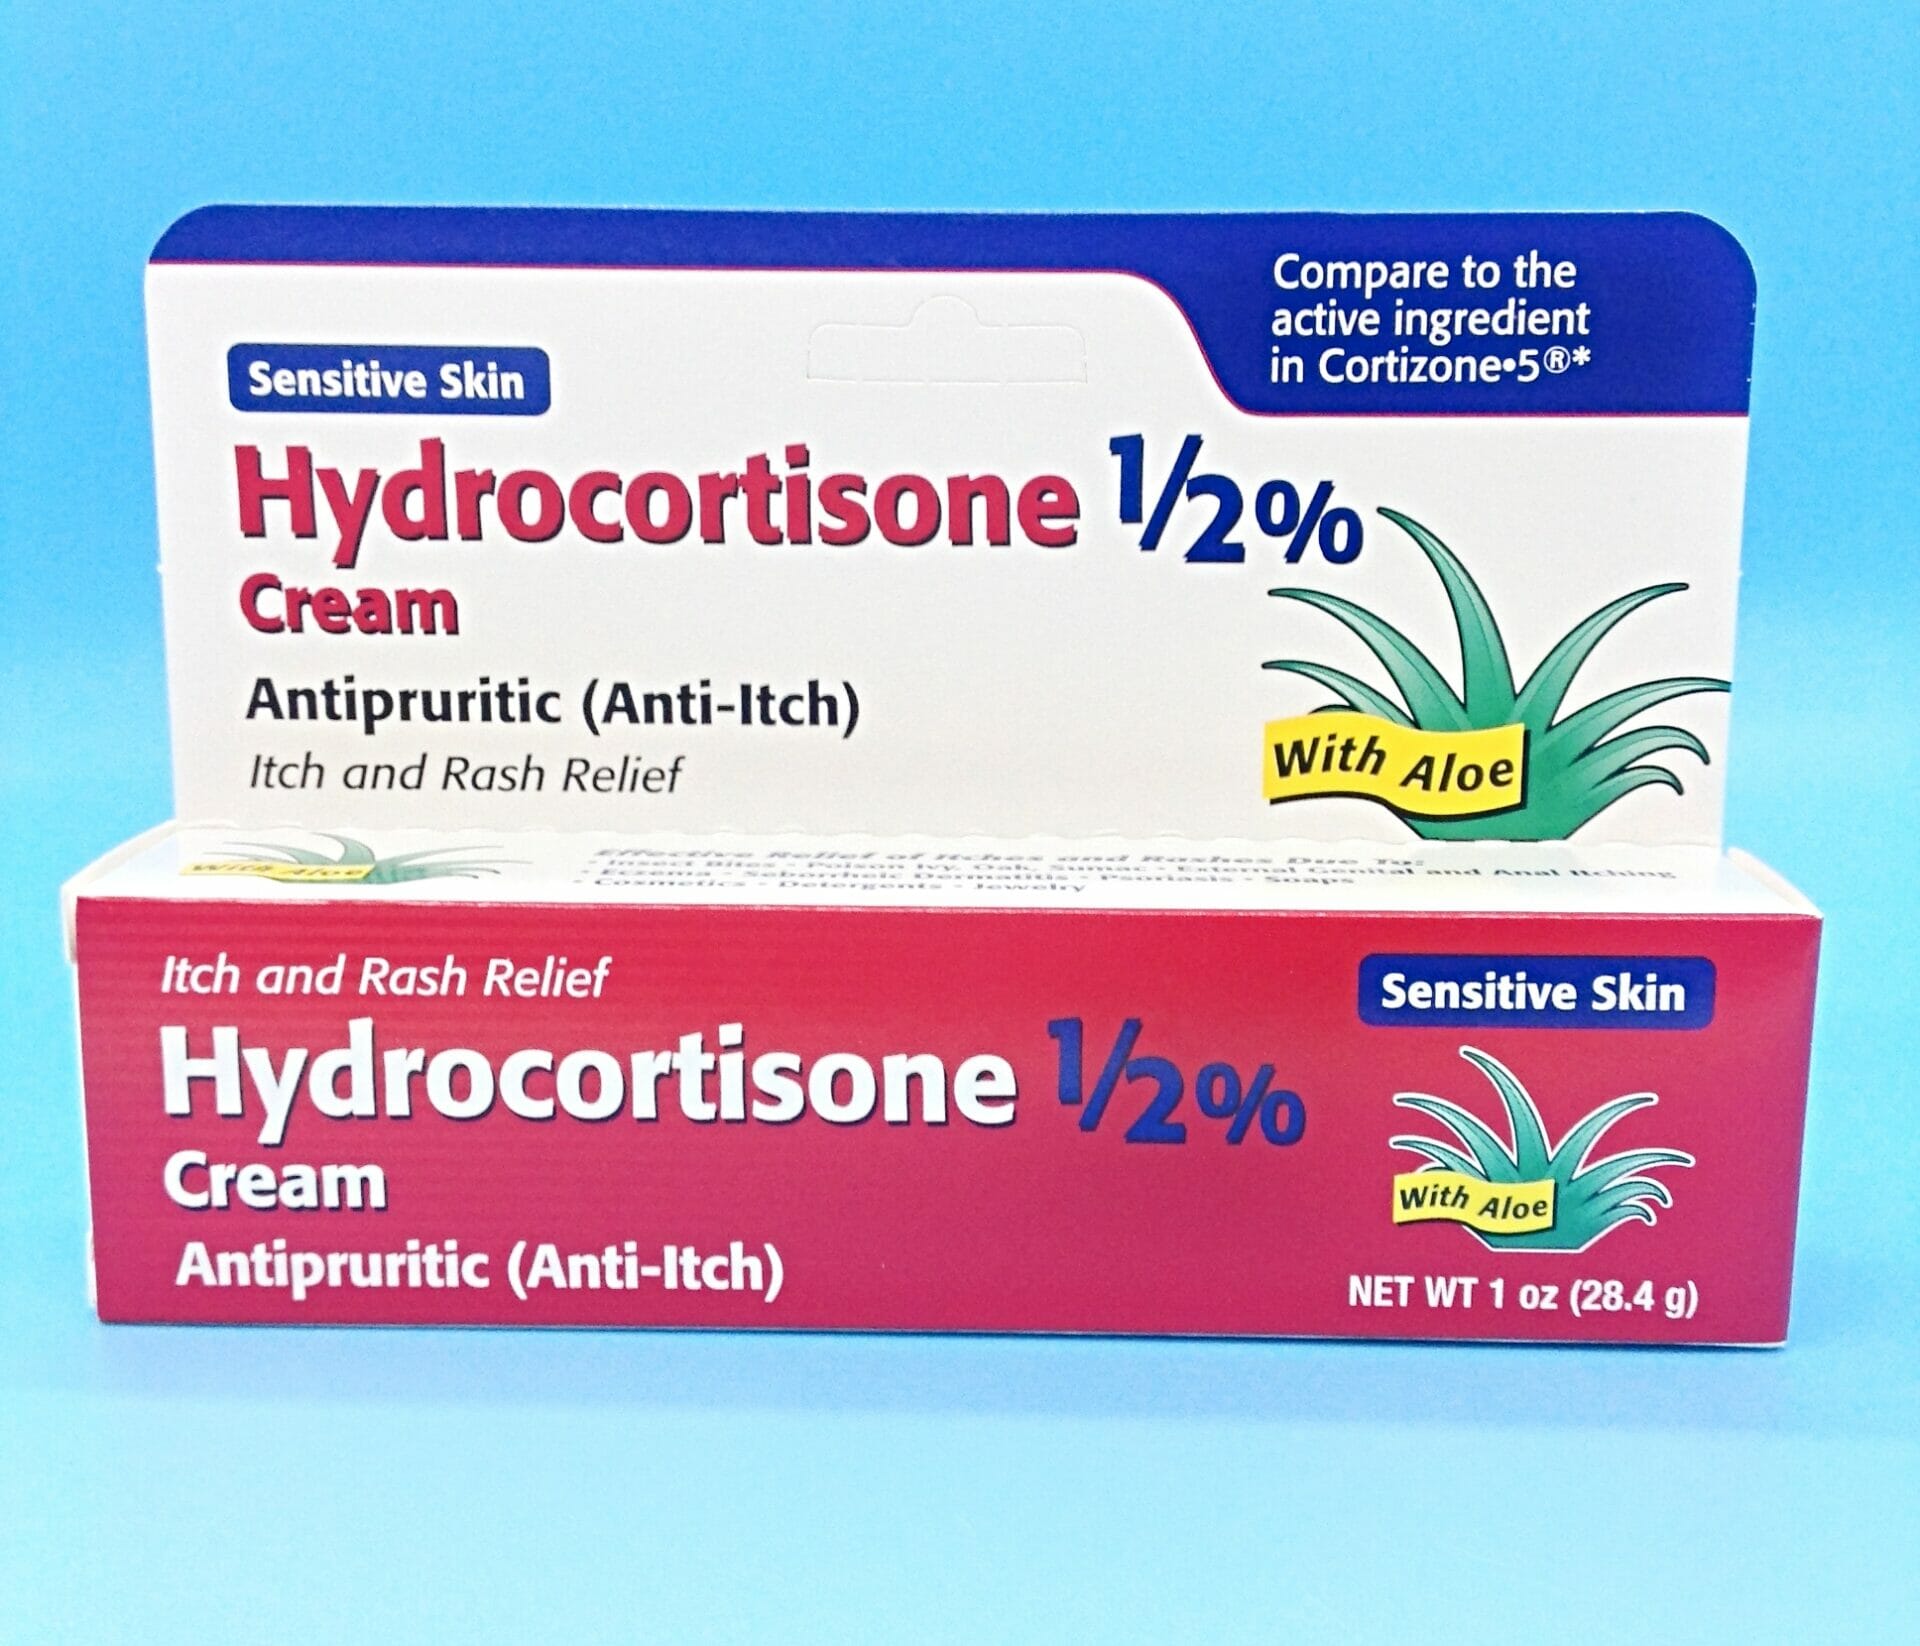 Hydrocortisone 0.5 Cream With Aloe 1oz (28.4gm) to Cortizone